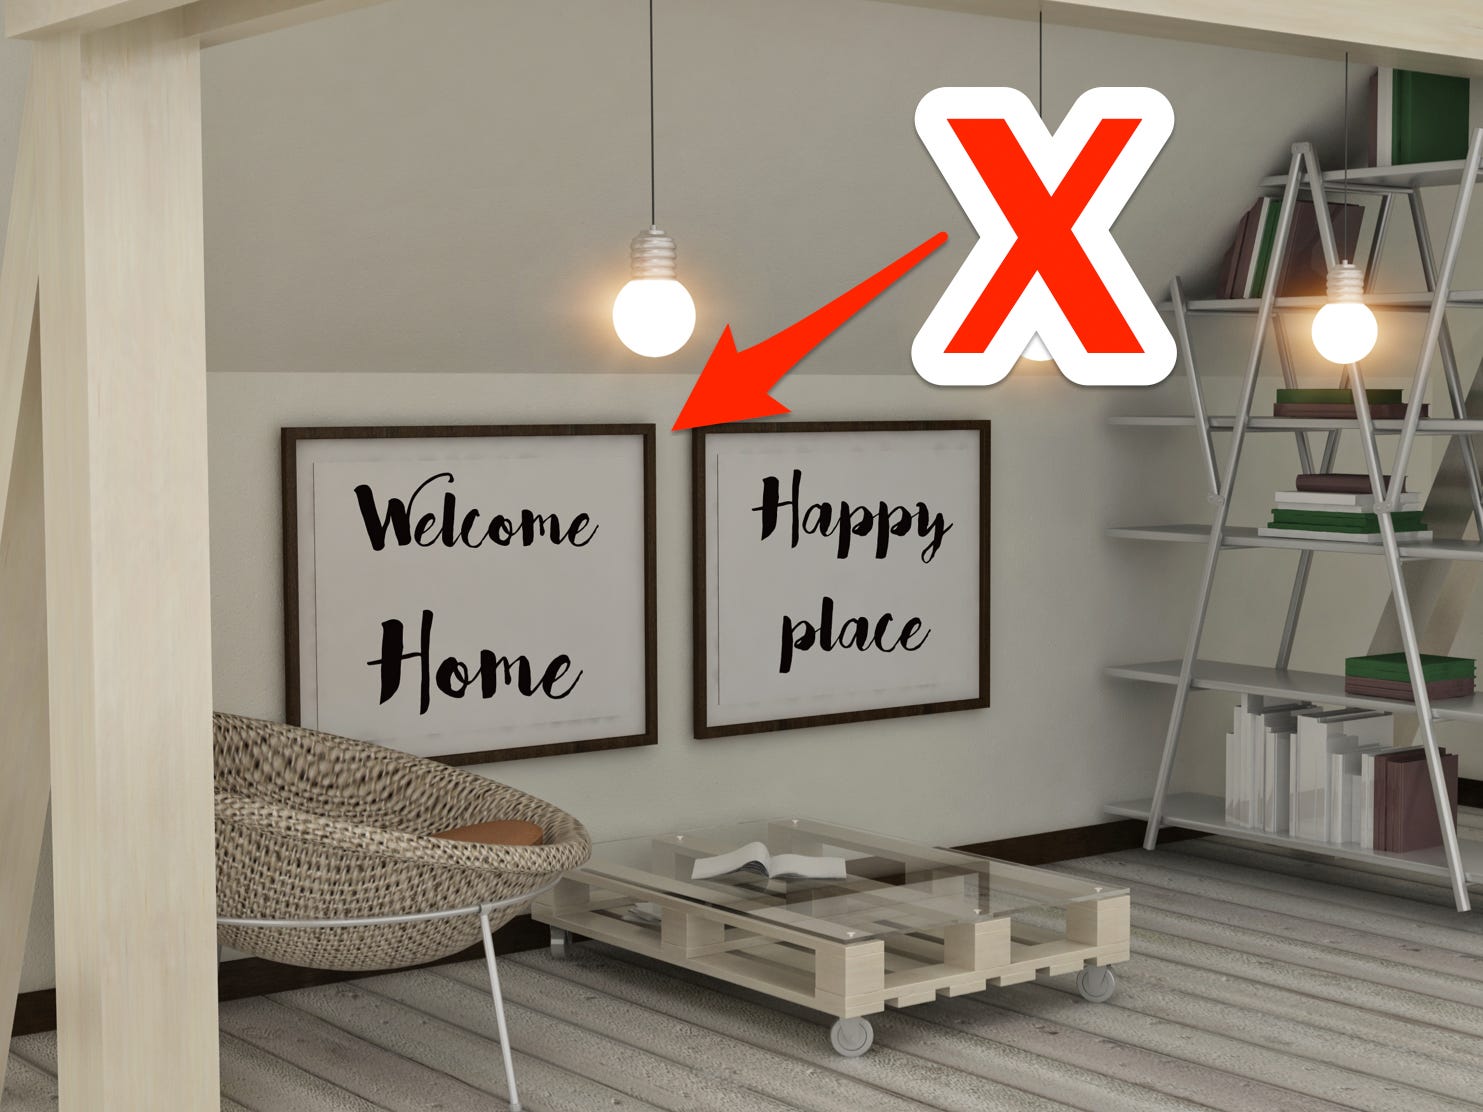 Rotes X und Pfeil zeigen auf Wohndekorschilder mit der Aufschrift „Welcome Home“ und „Happy Place“.